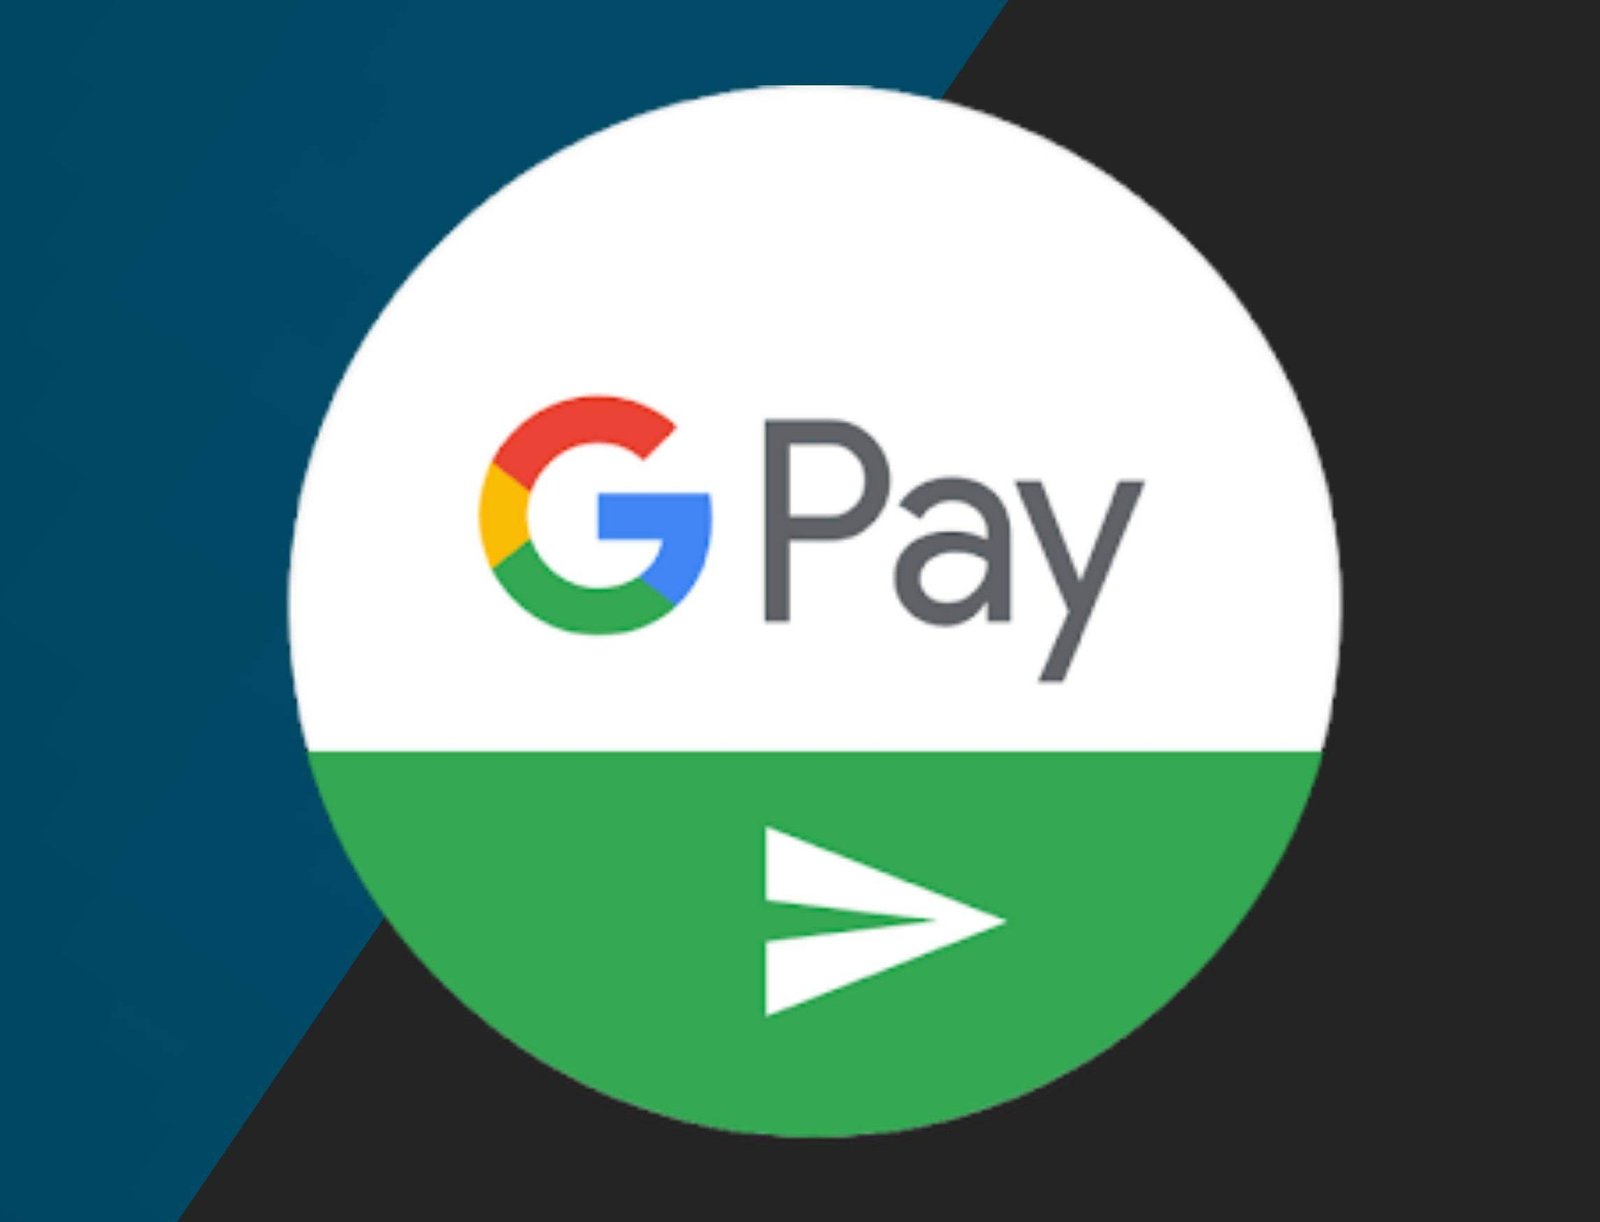 Google Pay Kya Hai? ये कैसे काम करता हैं?